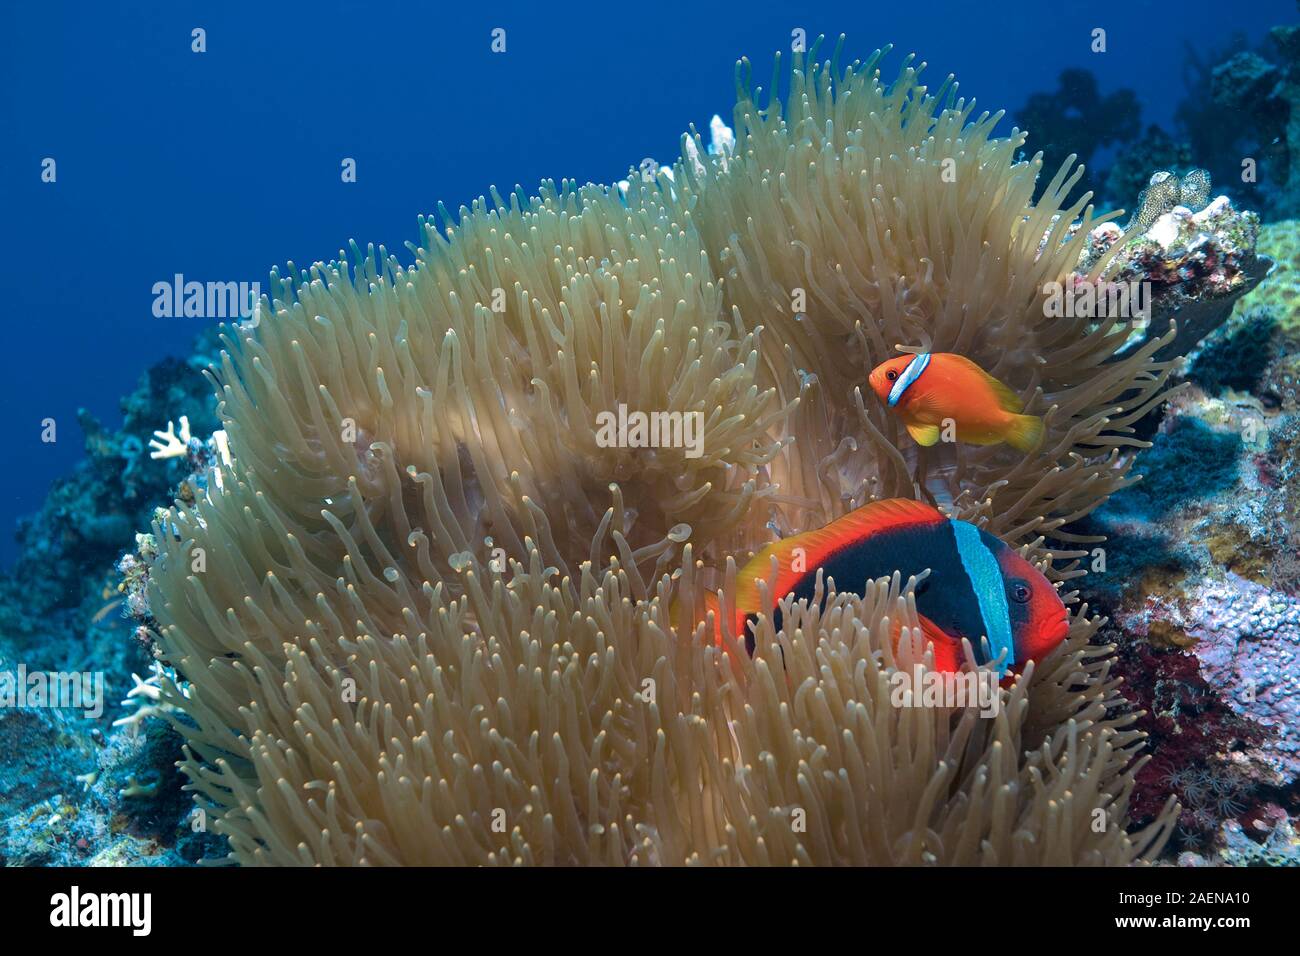 Le poisson clown ou poisson clown (Amphiprion frenatus bridée) vit en symbiose avec les anémones de mer, Sabang Beach, Mindoro, Philippines Banque D'Images